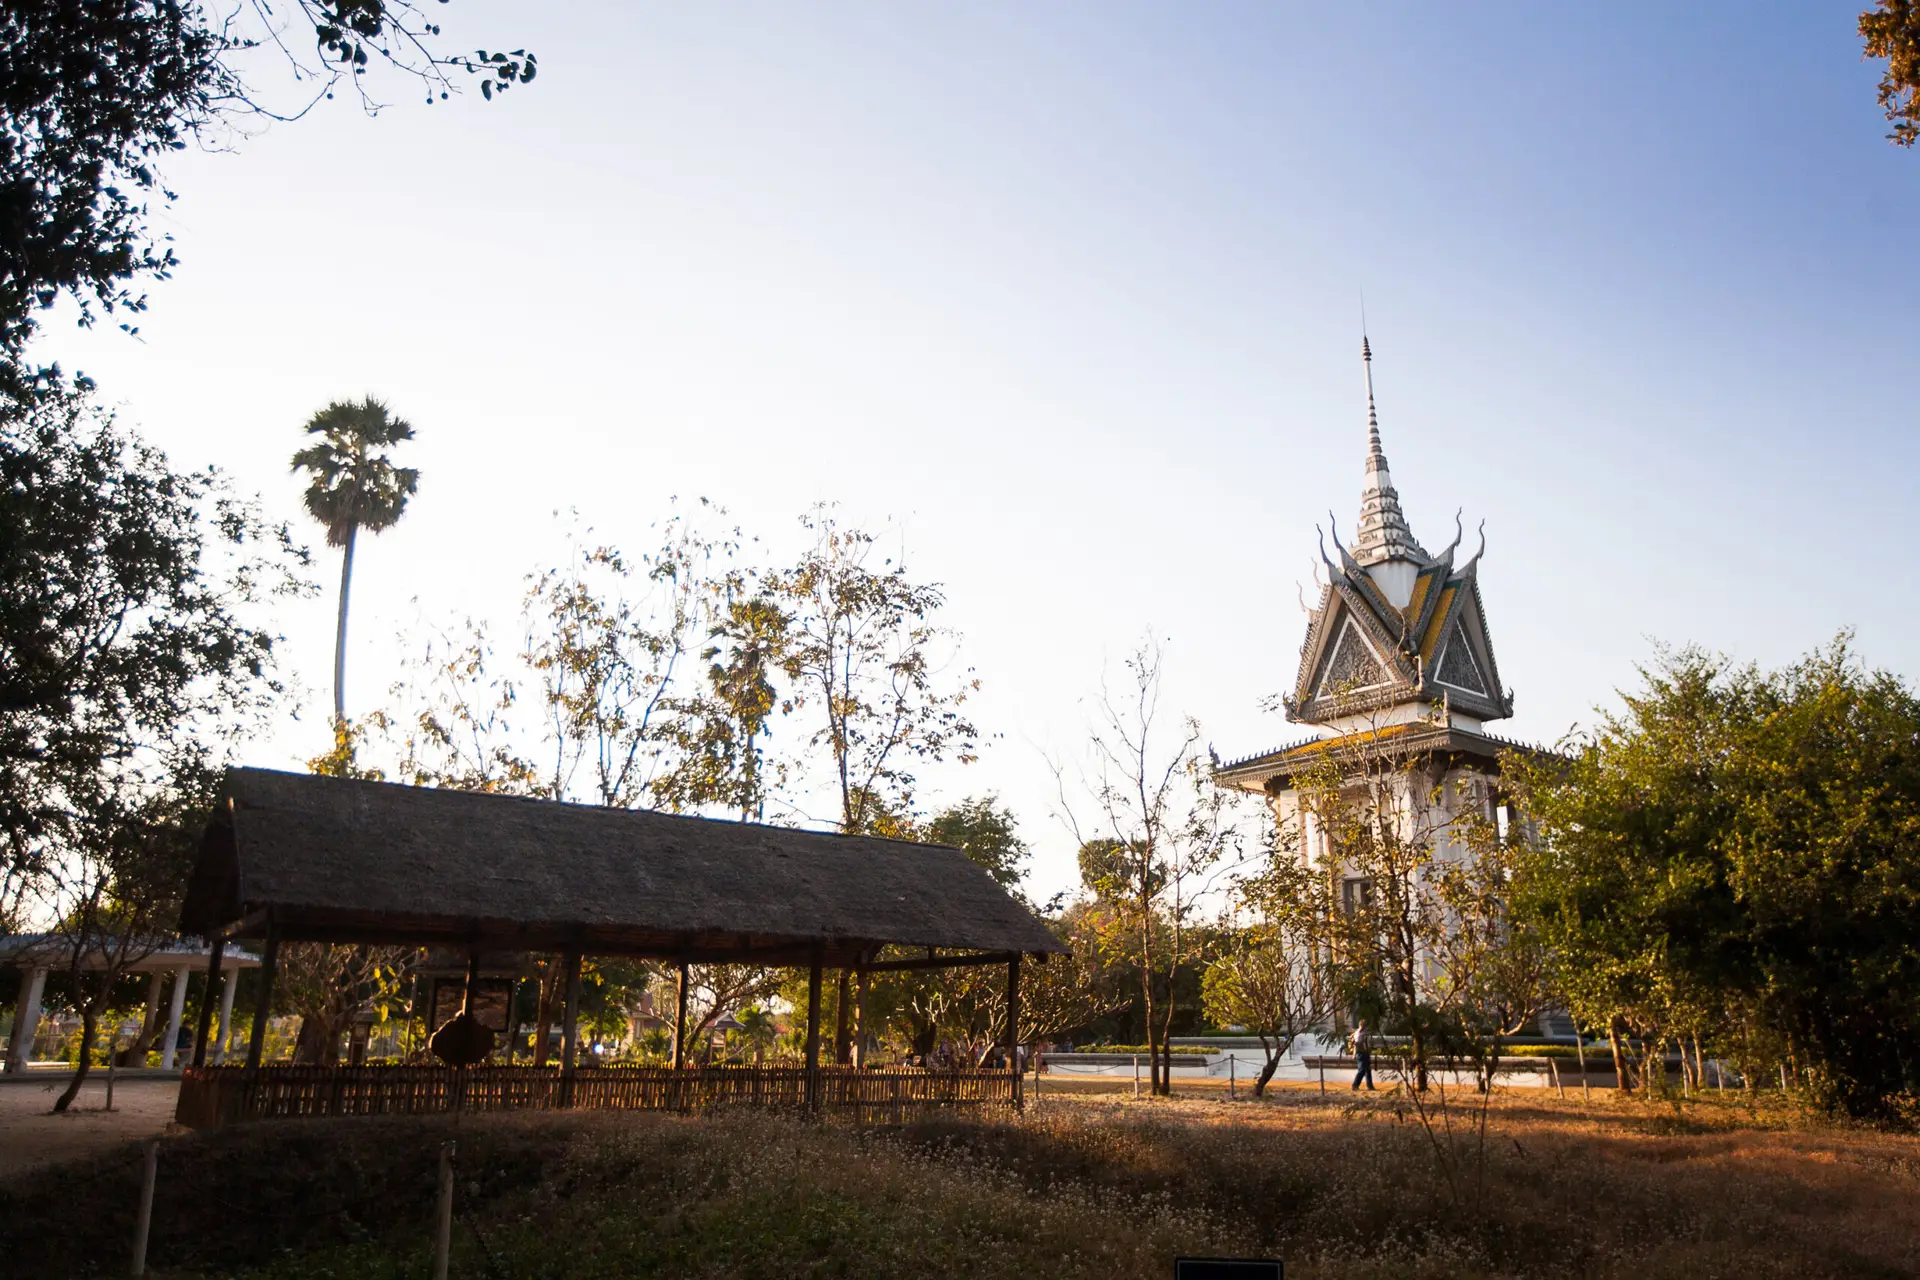 Une fois leurs aveux arrachés sous la torture des gardiens khmers rouges, les prisonniers de S-21 sont conduits de nuit au Killing Field (champ de massacre, de la mort) de Chœung Ek, un lieu isolé près de Phnom Penh, où ils étaient mis à mort. Transformé en mémorial, Chœung Ek permet aux Cambodgiens, notamment aux jeunes générations, de se recueillir et de rendre hommage aux victimes des Khmers rouges.